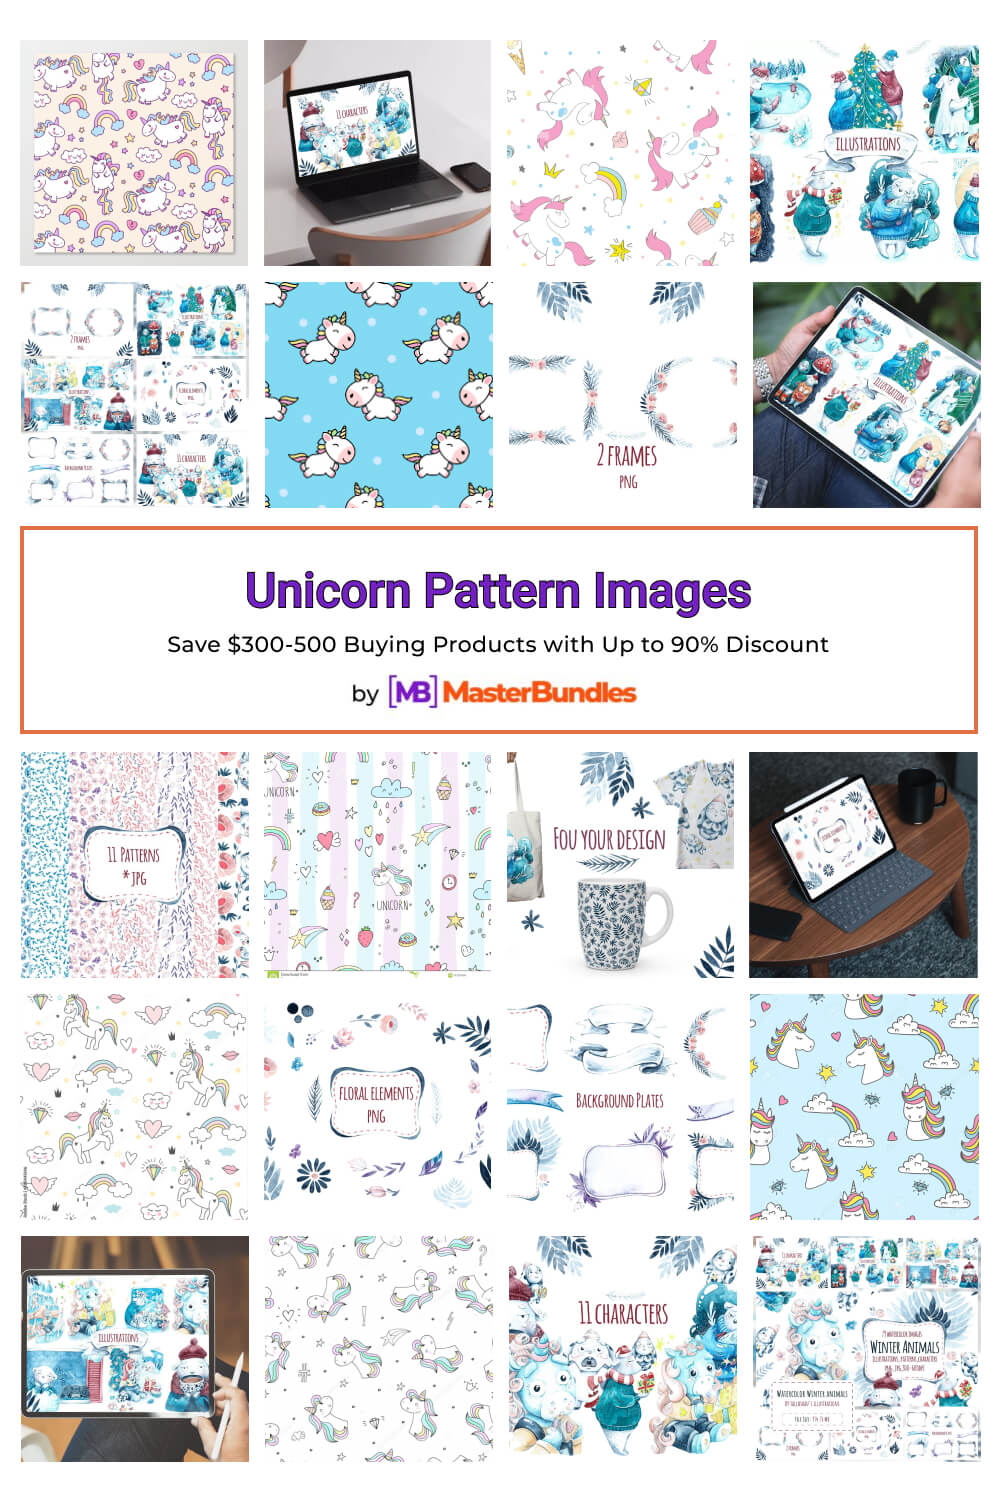 unicorn pattern images pinterest image.